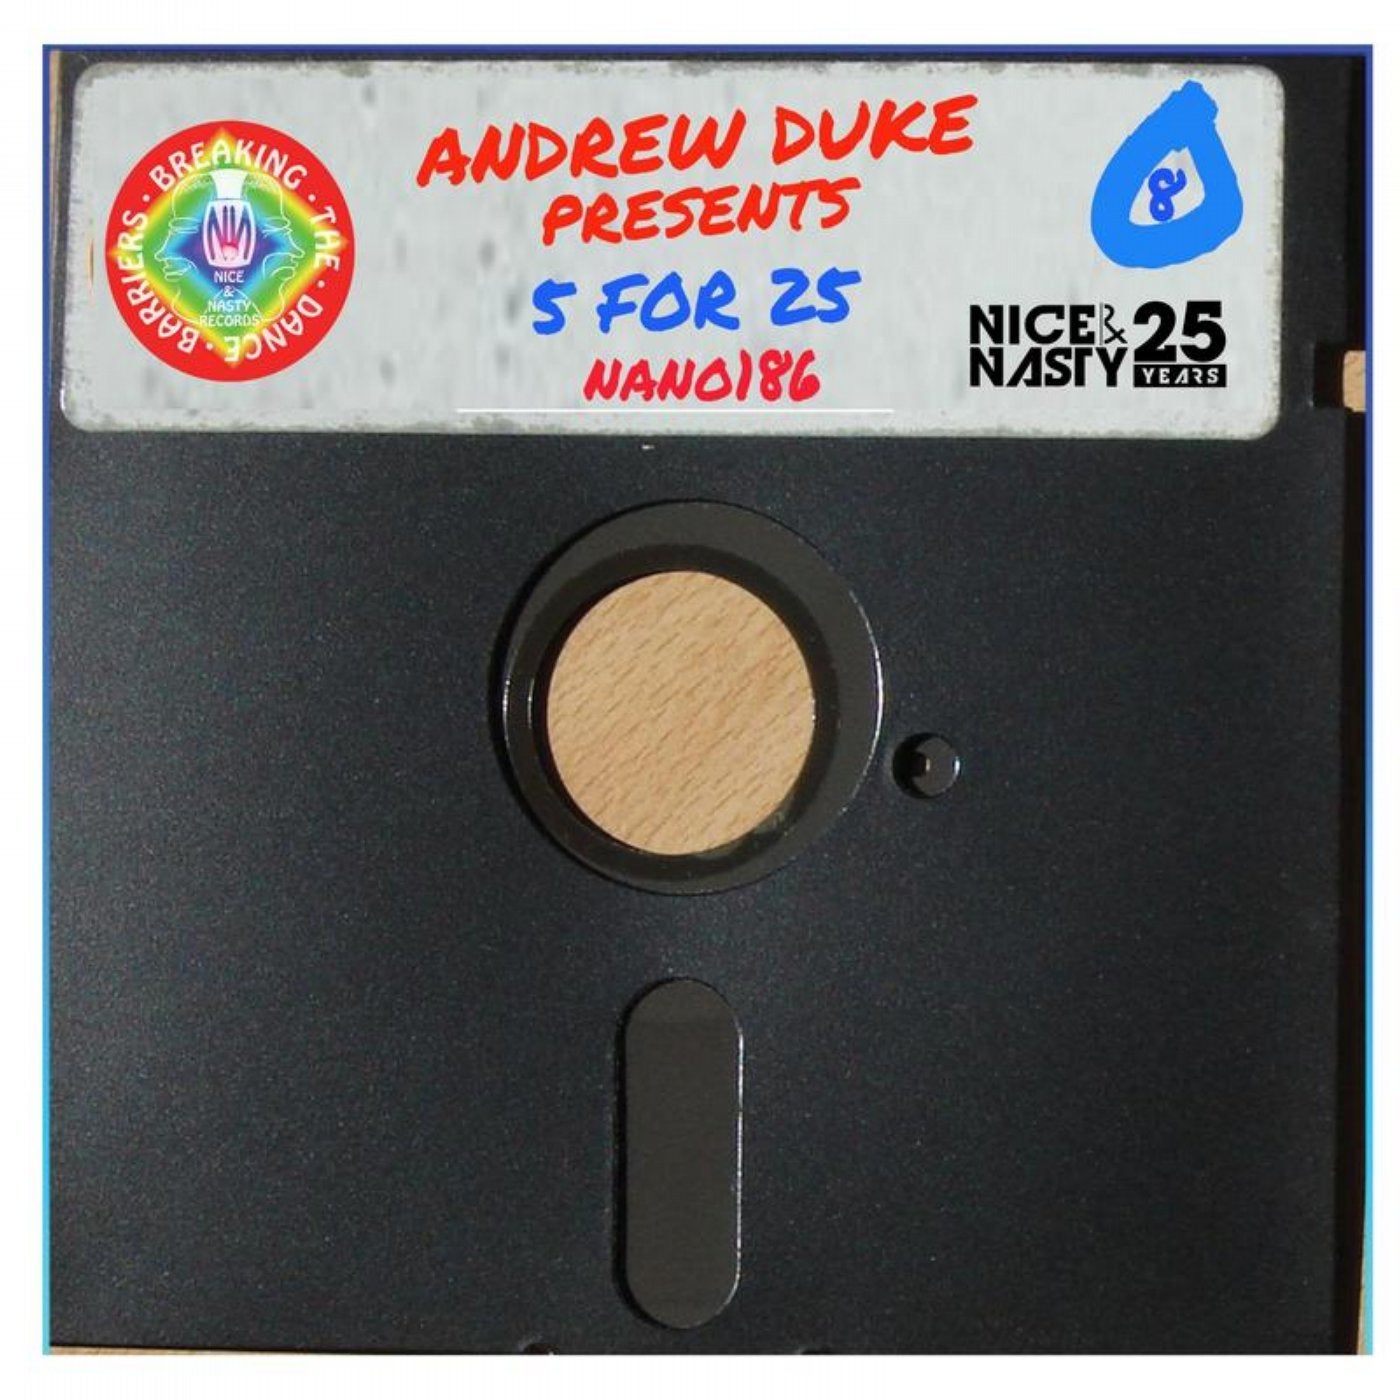 Andrew Duke presents 5 for 25